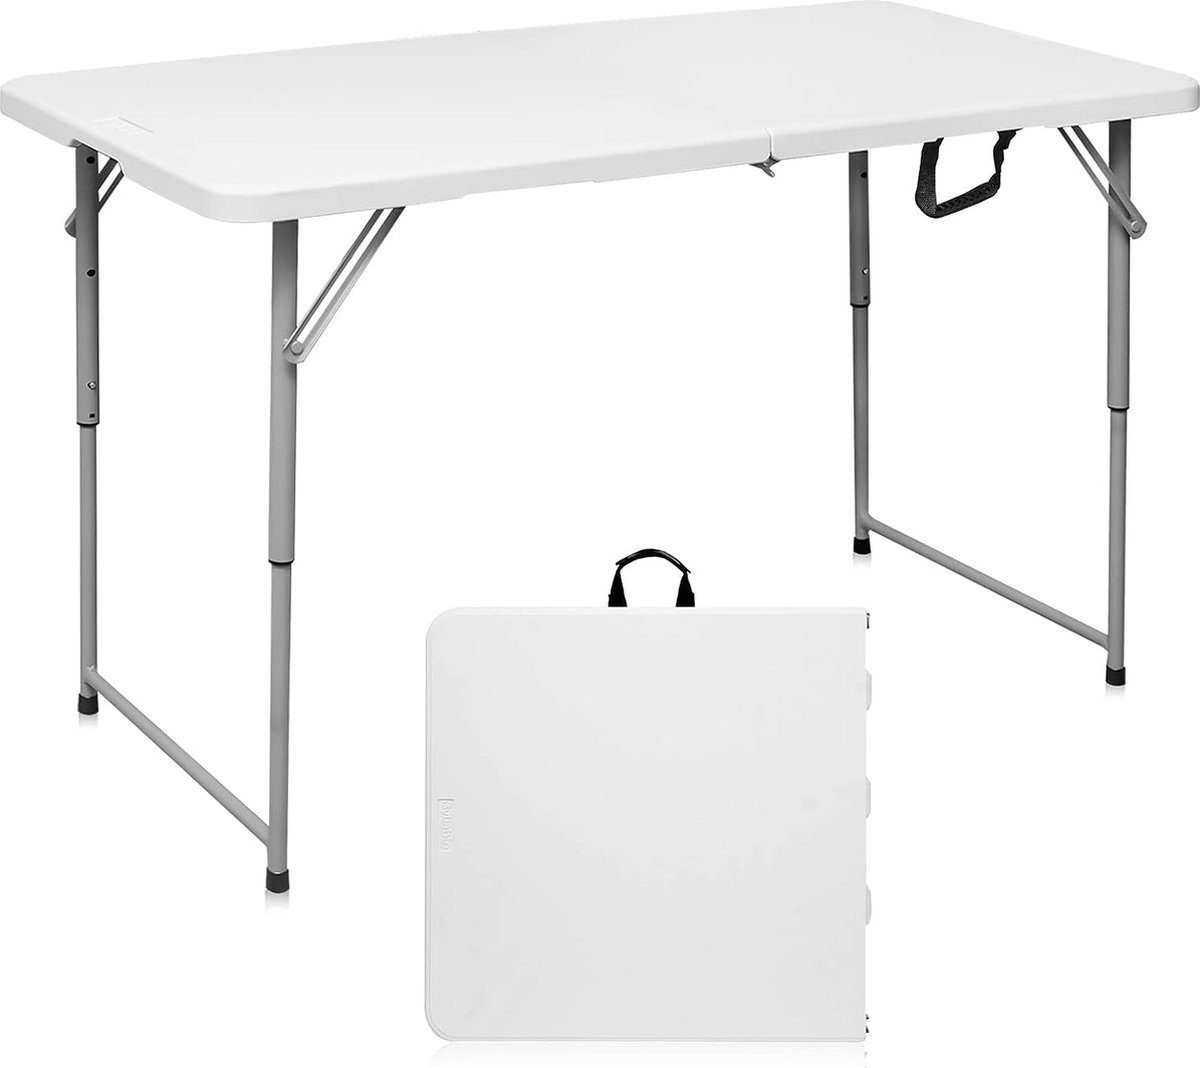 BOTC Klapptisch Camping-Tisch Multifunktionstisch (Markttisch Tapeziertisch), Klappbarer Tisch - 120*60CM - Klappbarer Tisch